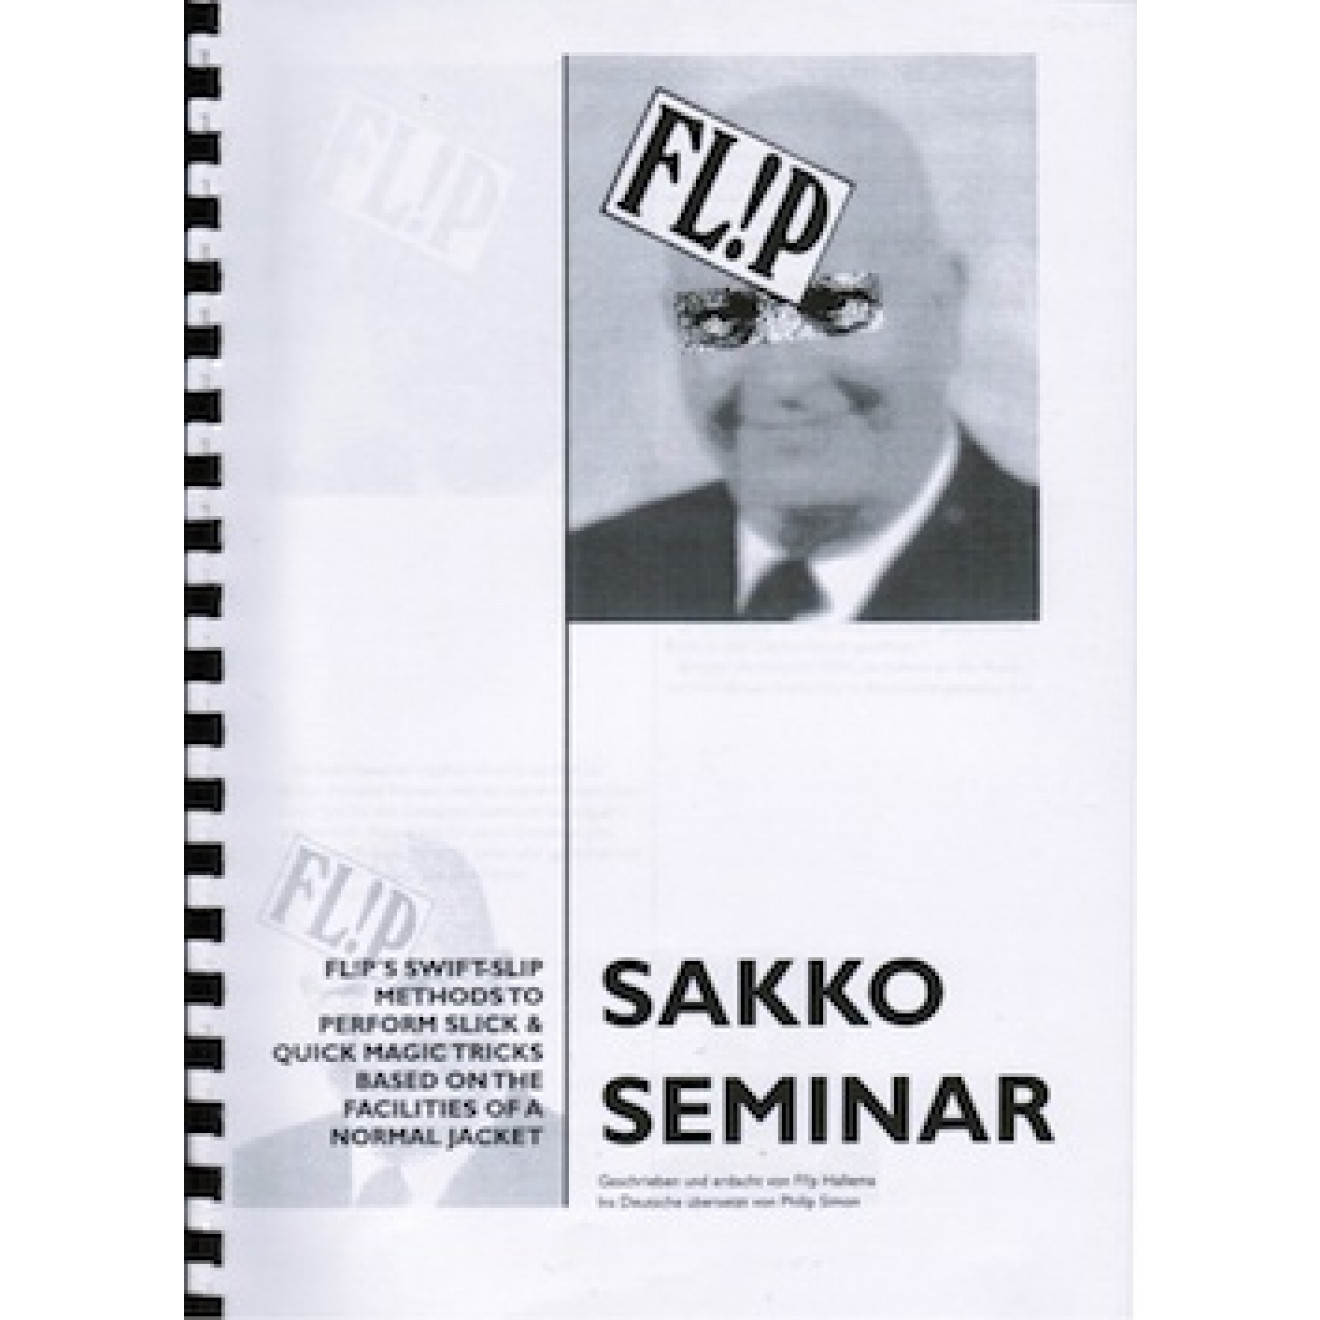 Sakko Seminar